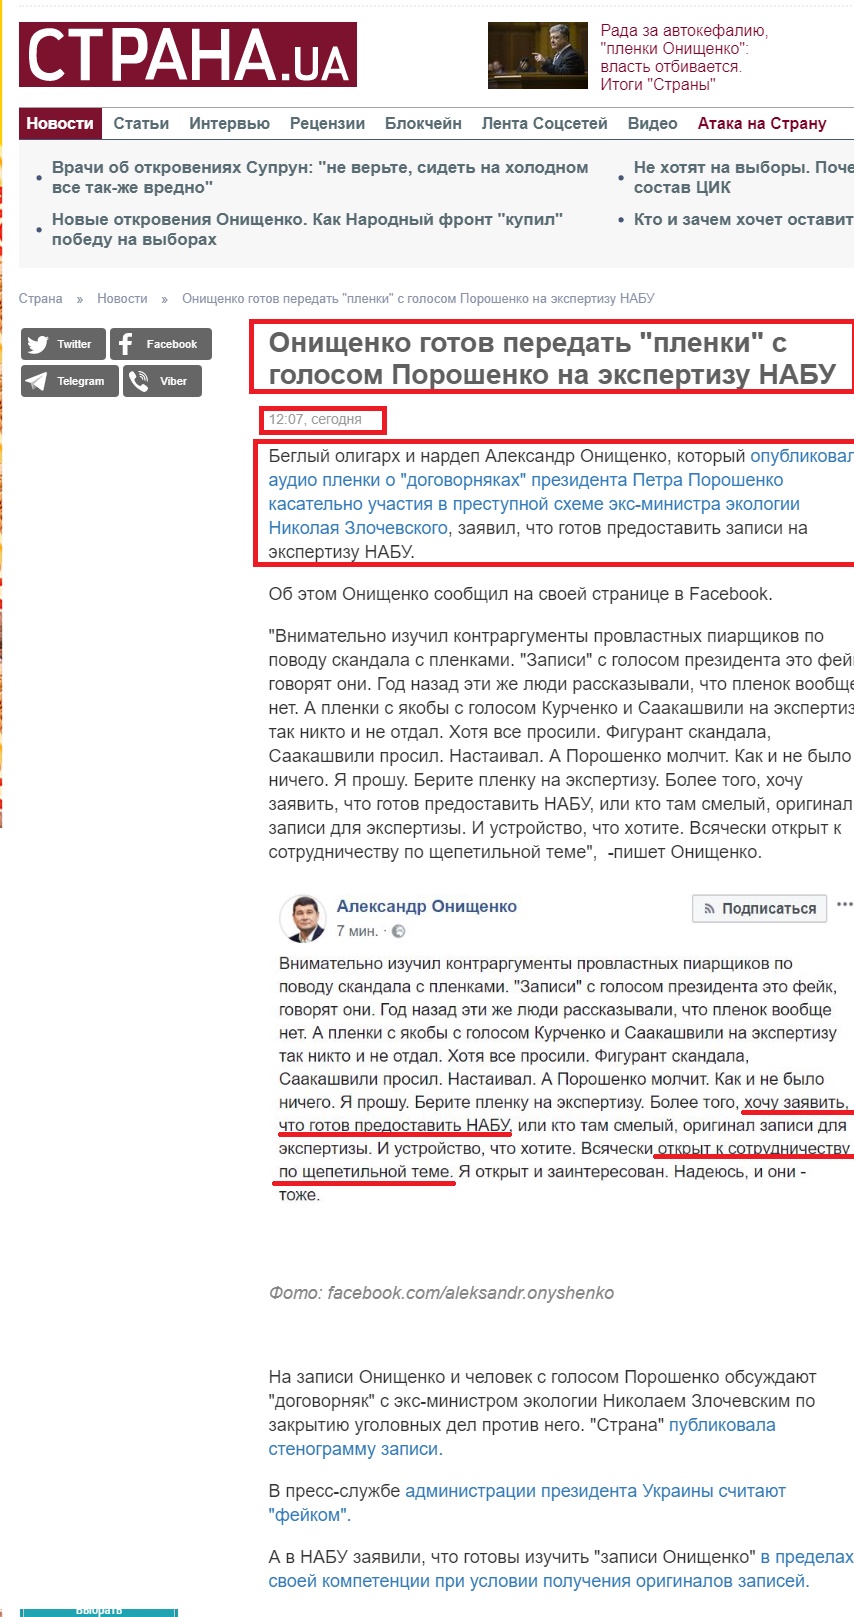 https://strana.ua/news/136905-onishchenko-hotov-peredat-plenki-s-holosom-poroshenko-na-ekspertizu-nabu.html